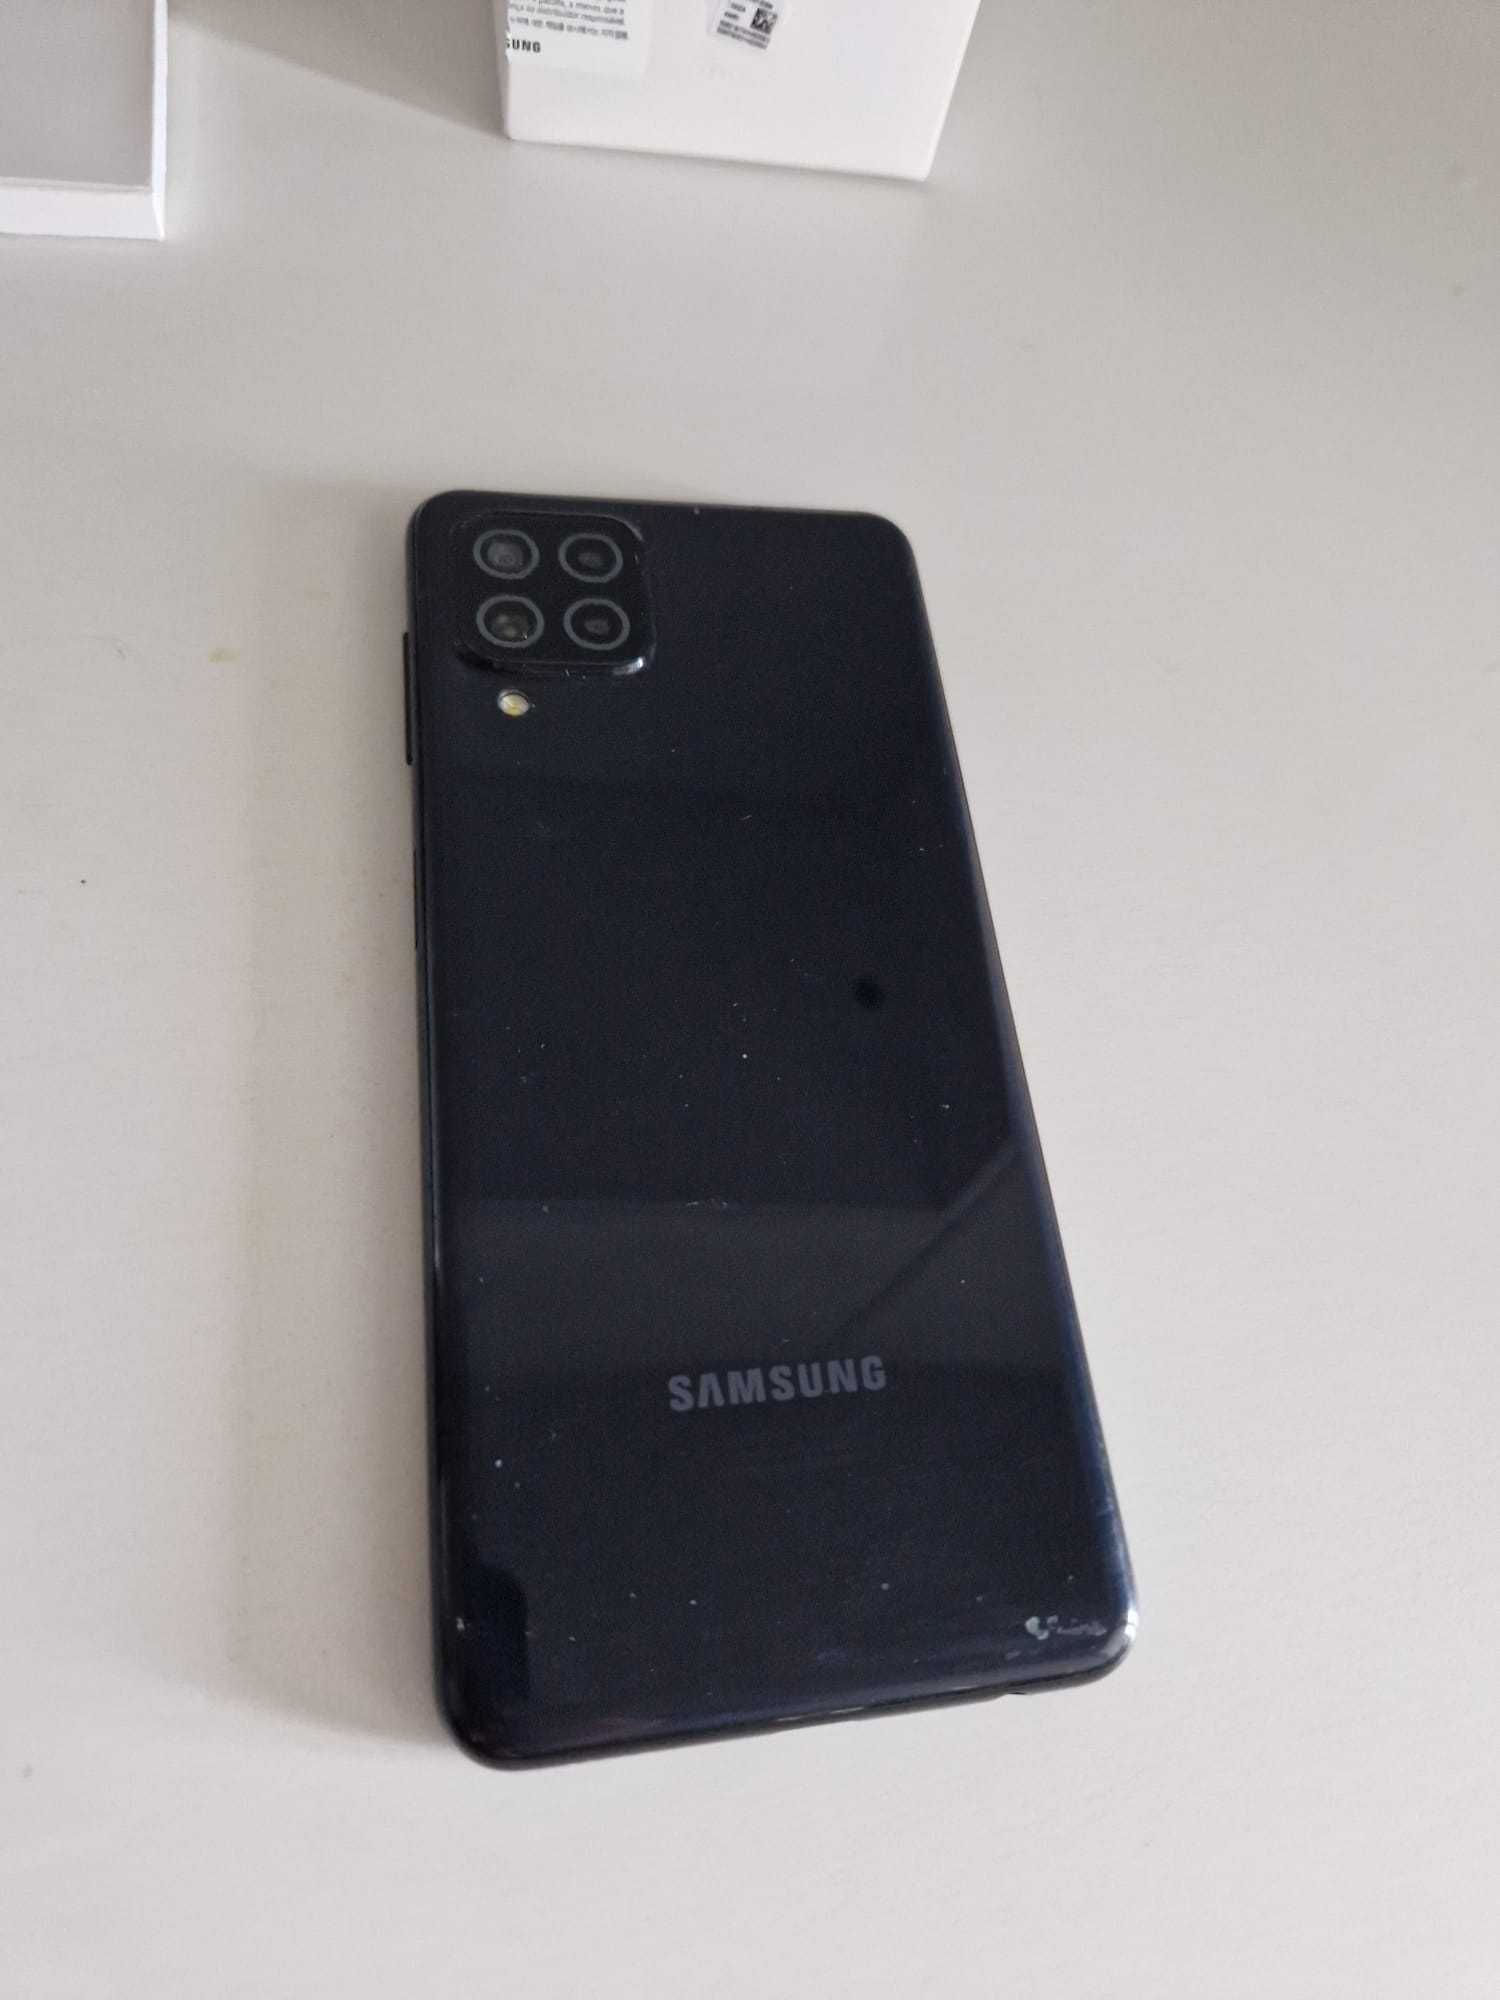 Samsung Galaxy A22